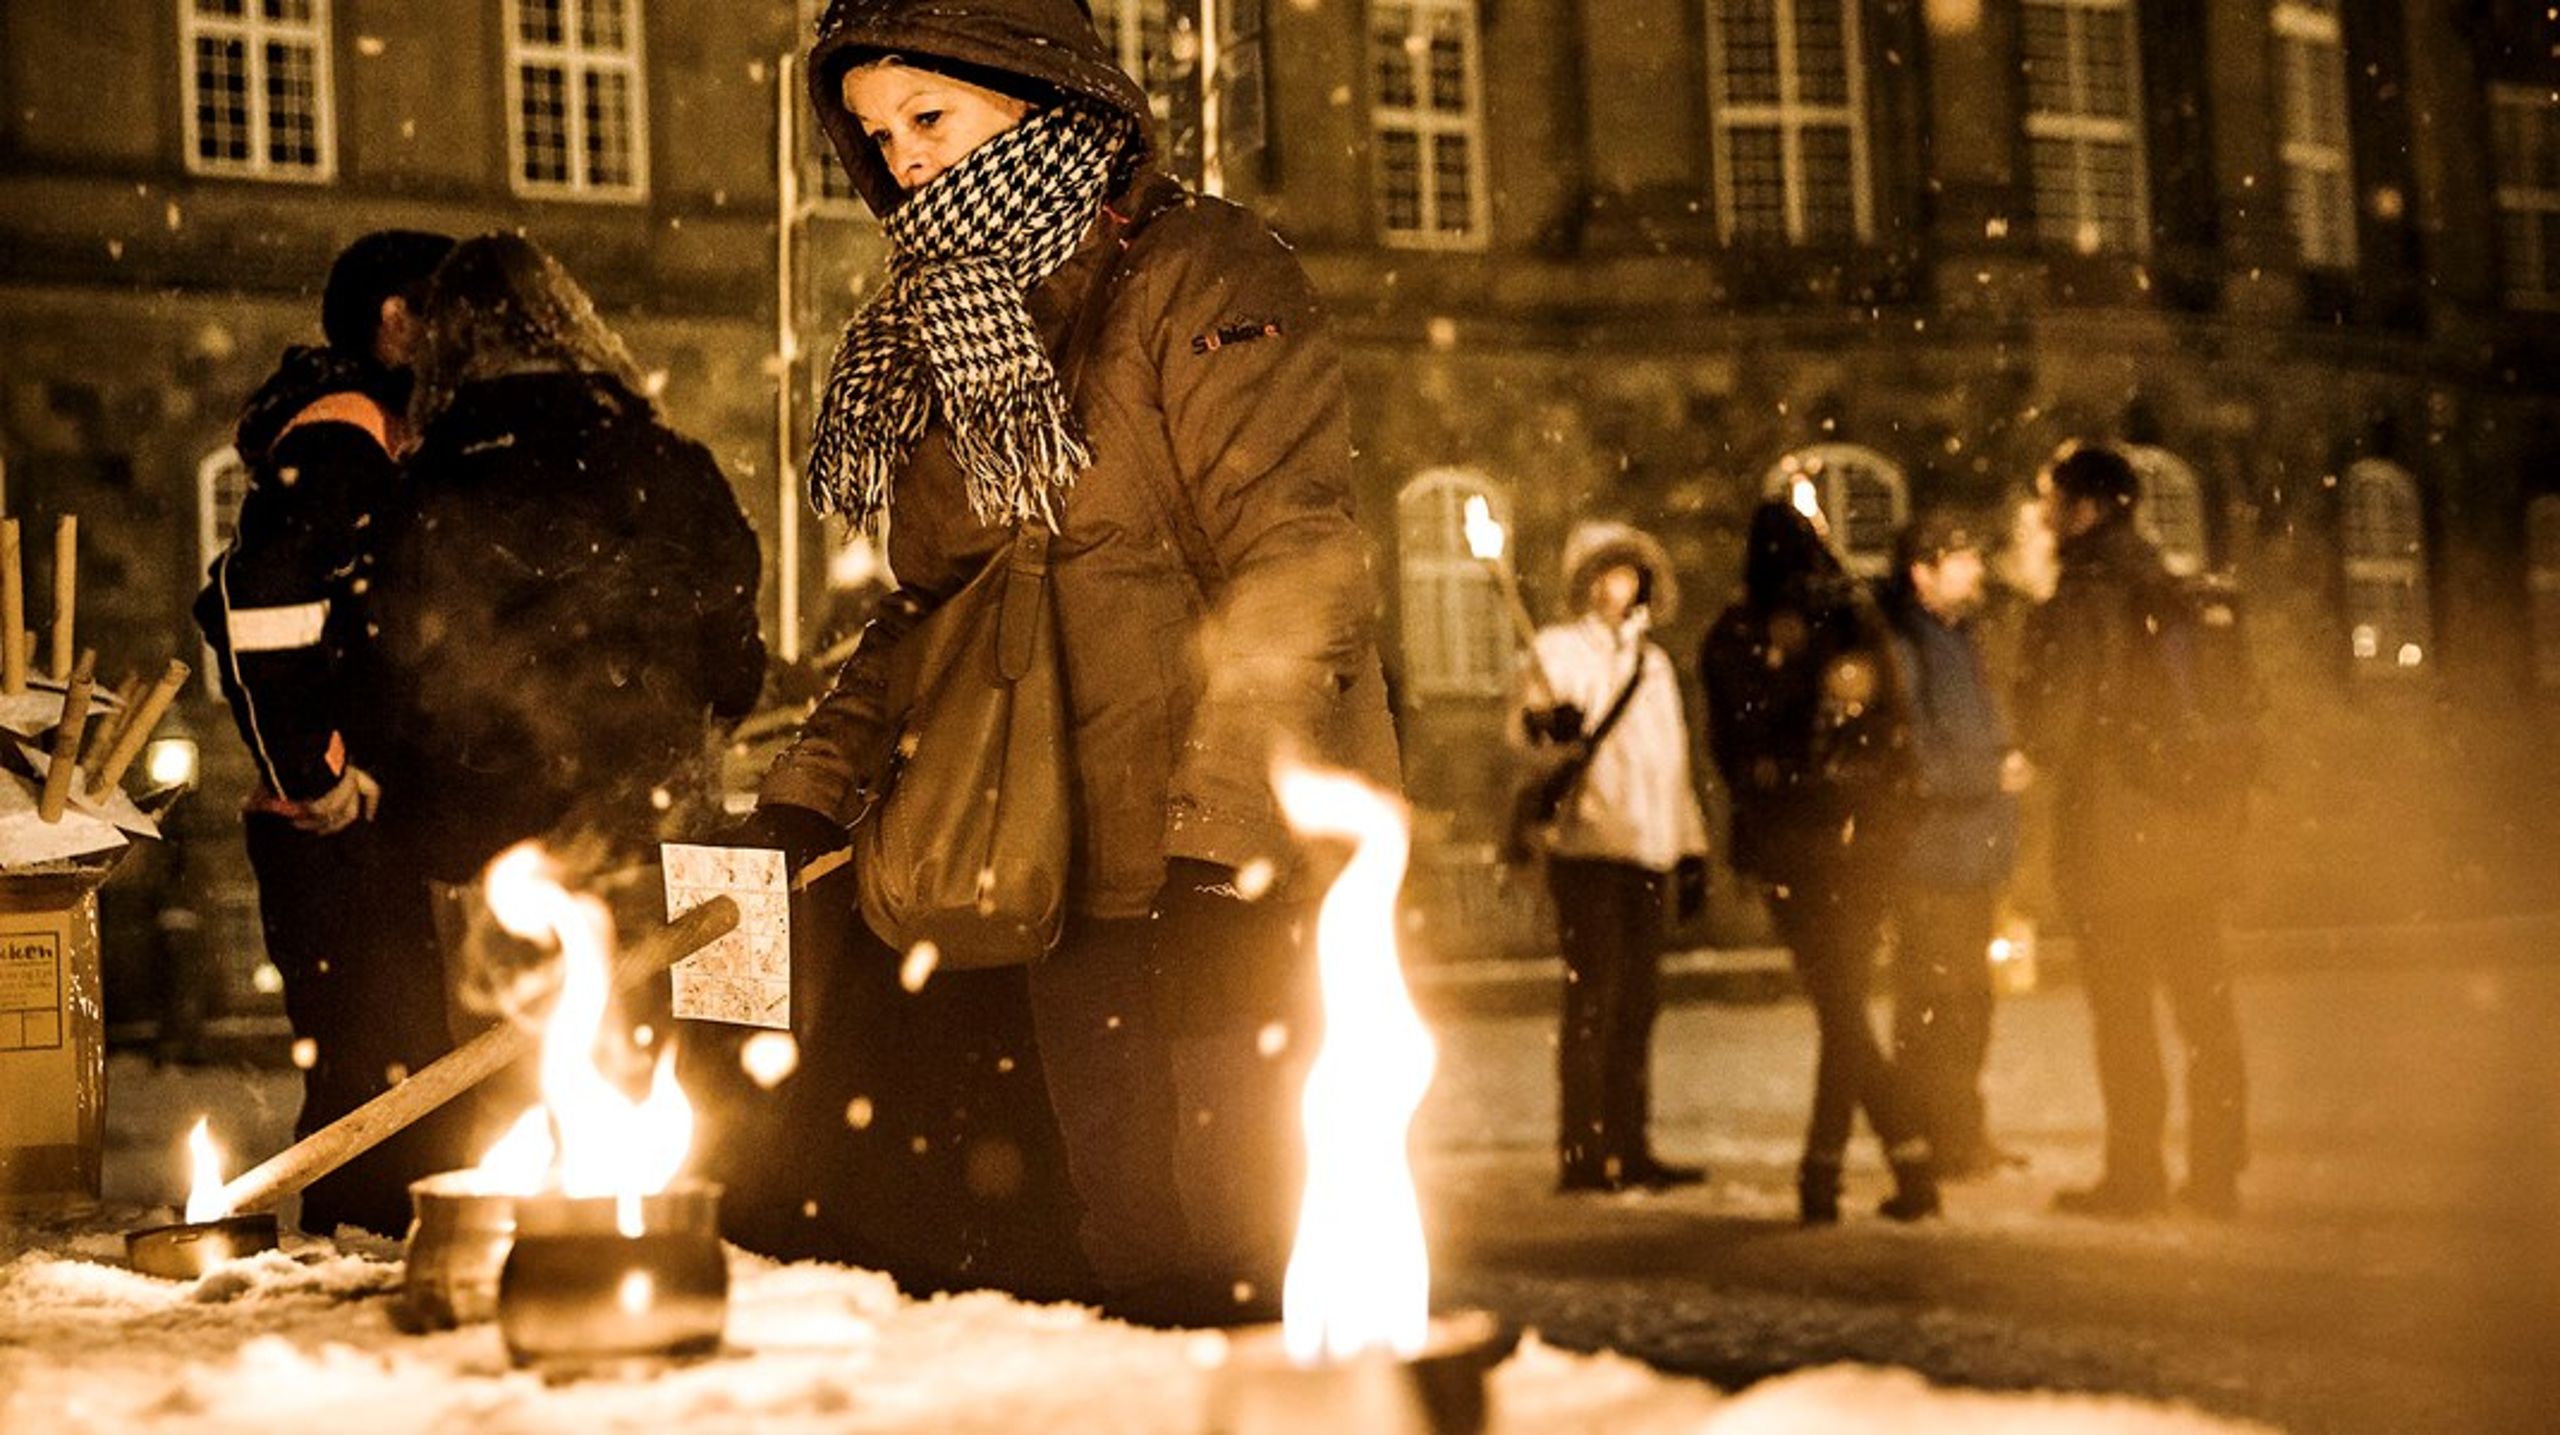 Det medførte protester, da der i 2013 blev vedtaget en ny offentlighedslov, der gjorde det sværere at få aktindsigt hos myndigheder. Her afholdte en folkebevægelse for åbenhed lysfest mod loven på Christiansborg Slotsplads. ARKIV.